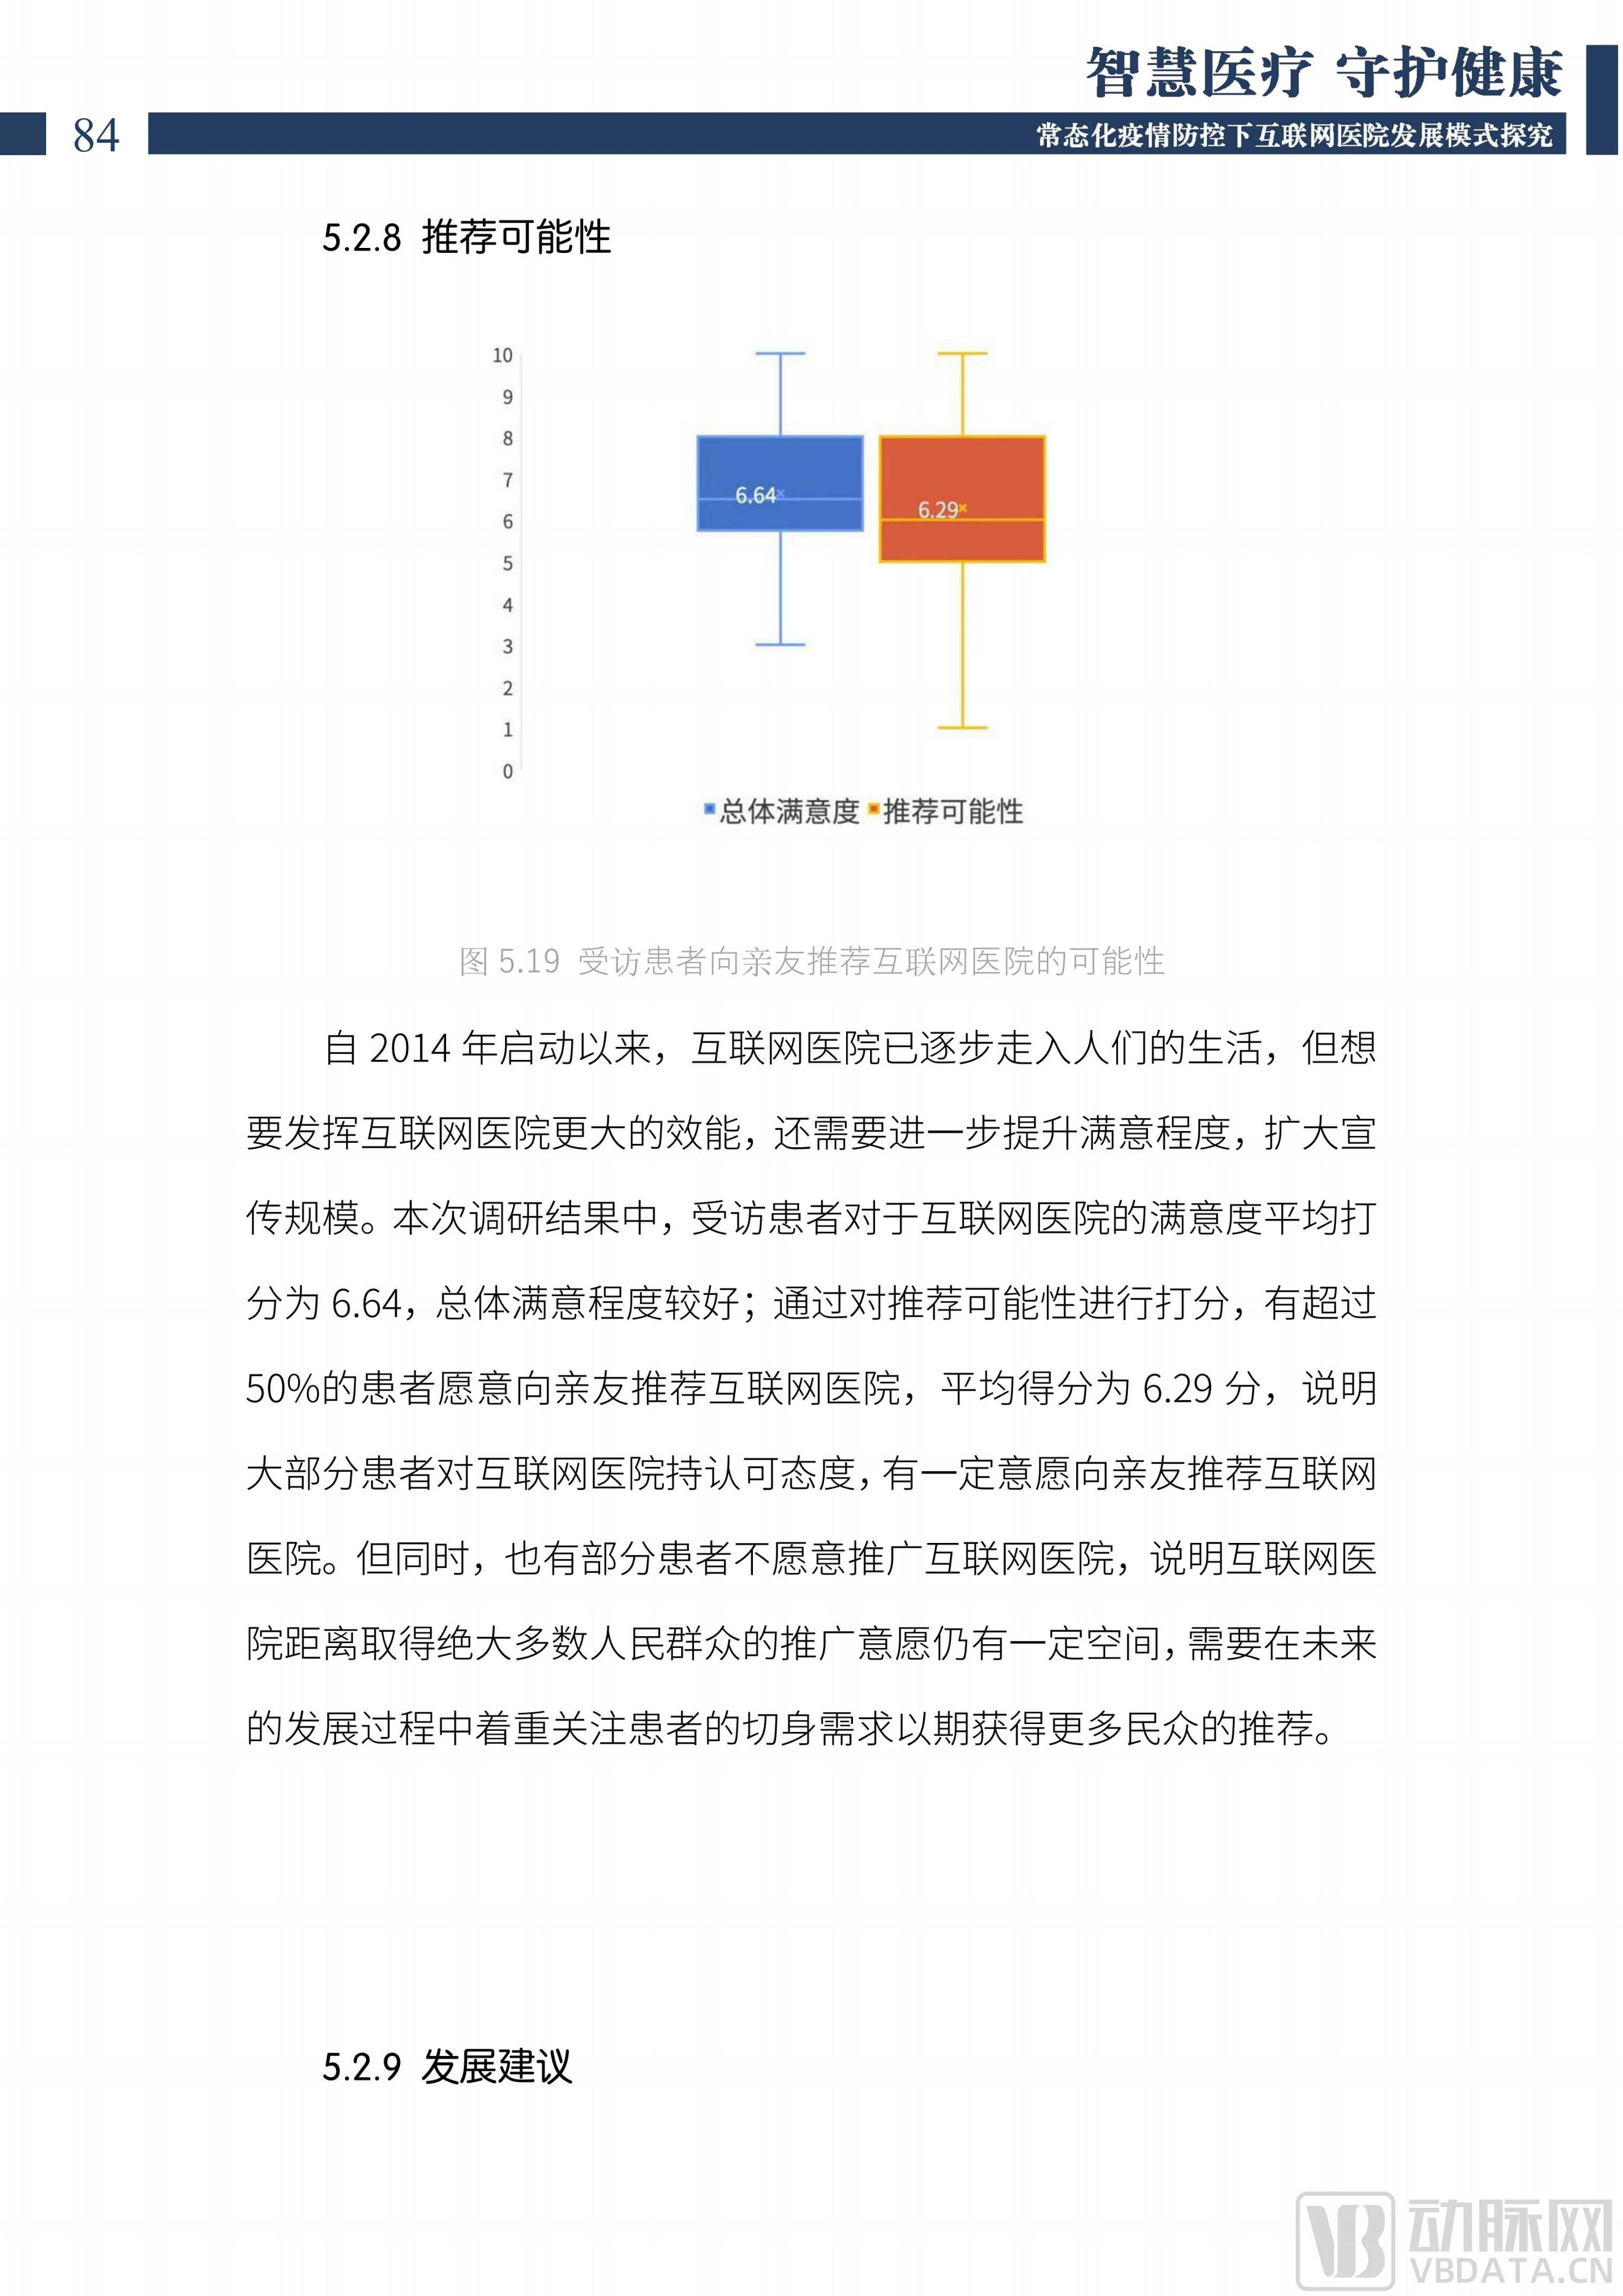 中国互联网医院发展调研报告(2022)图片